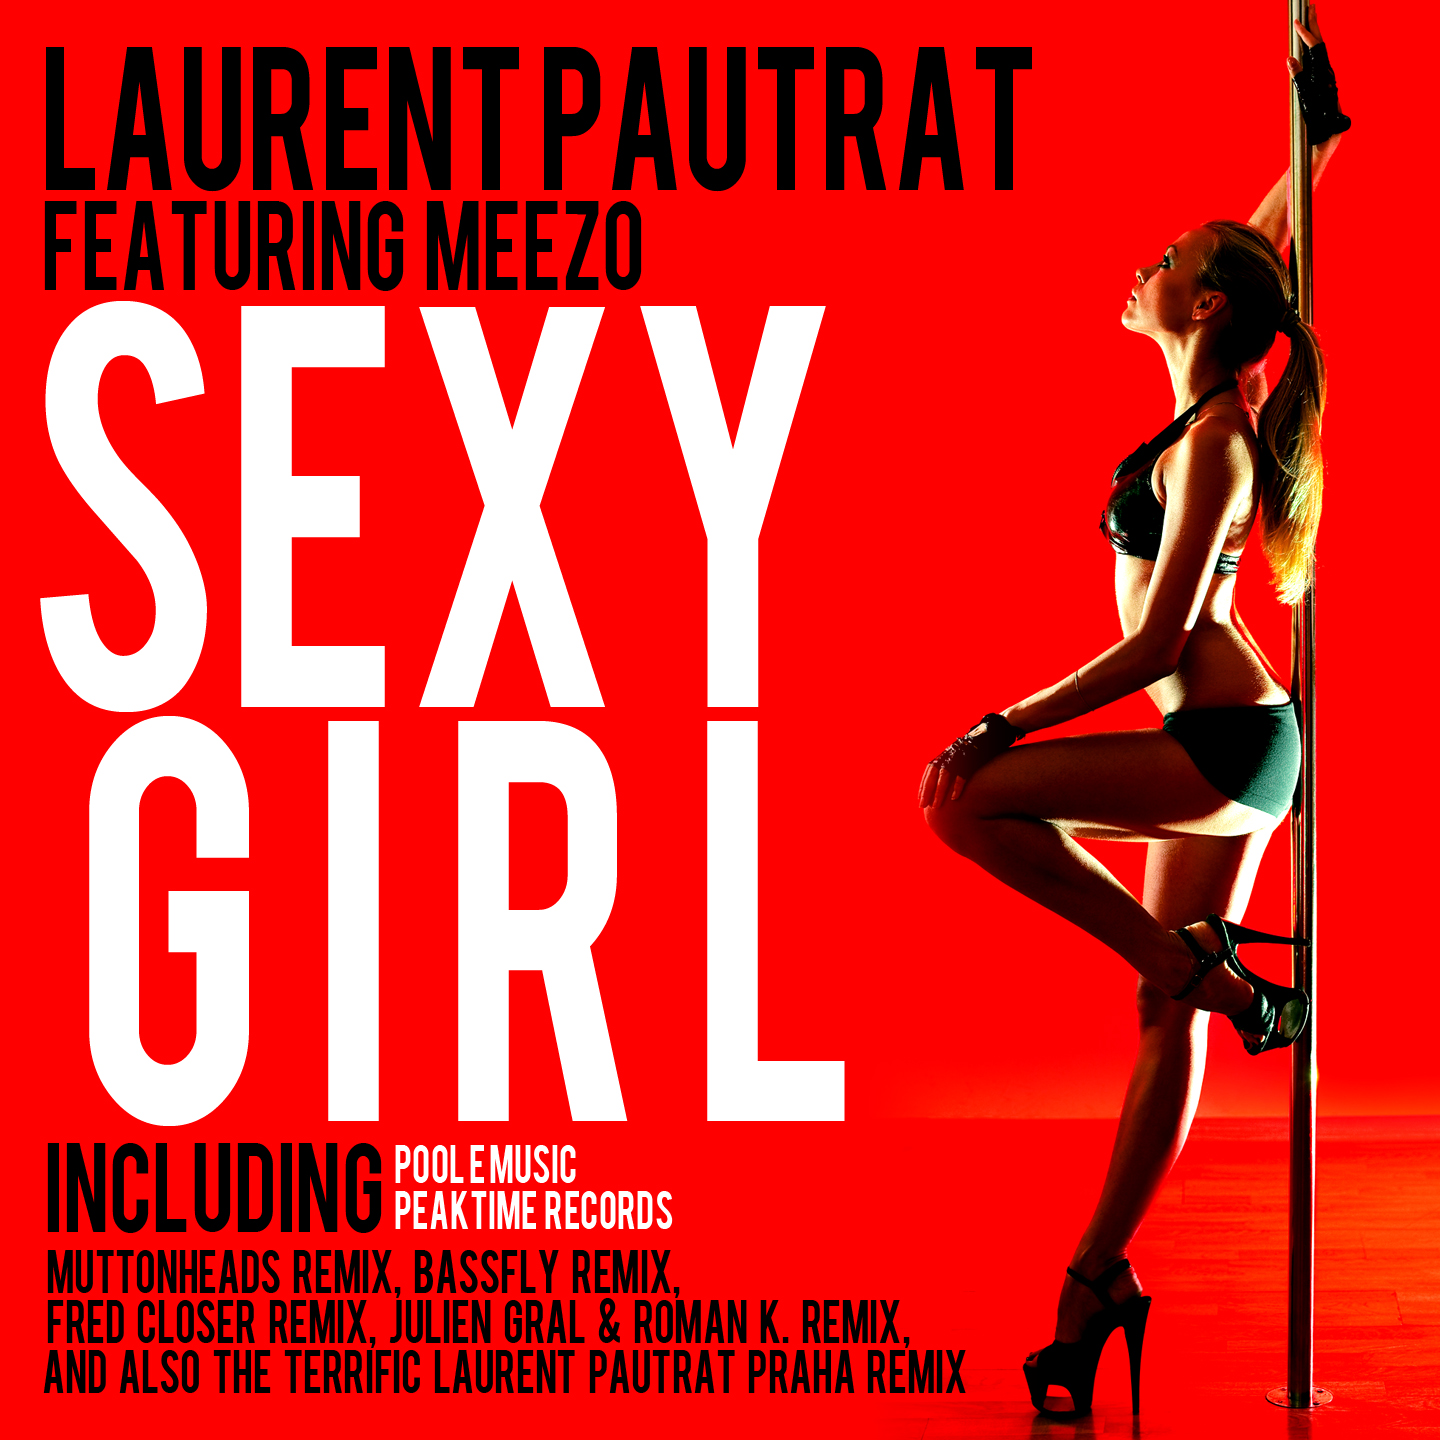 Laurent Pautrat feat Meezo - Sexy girl EP